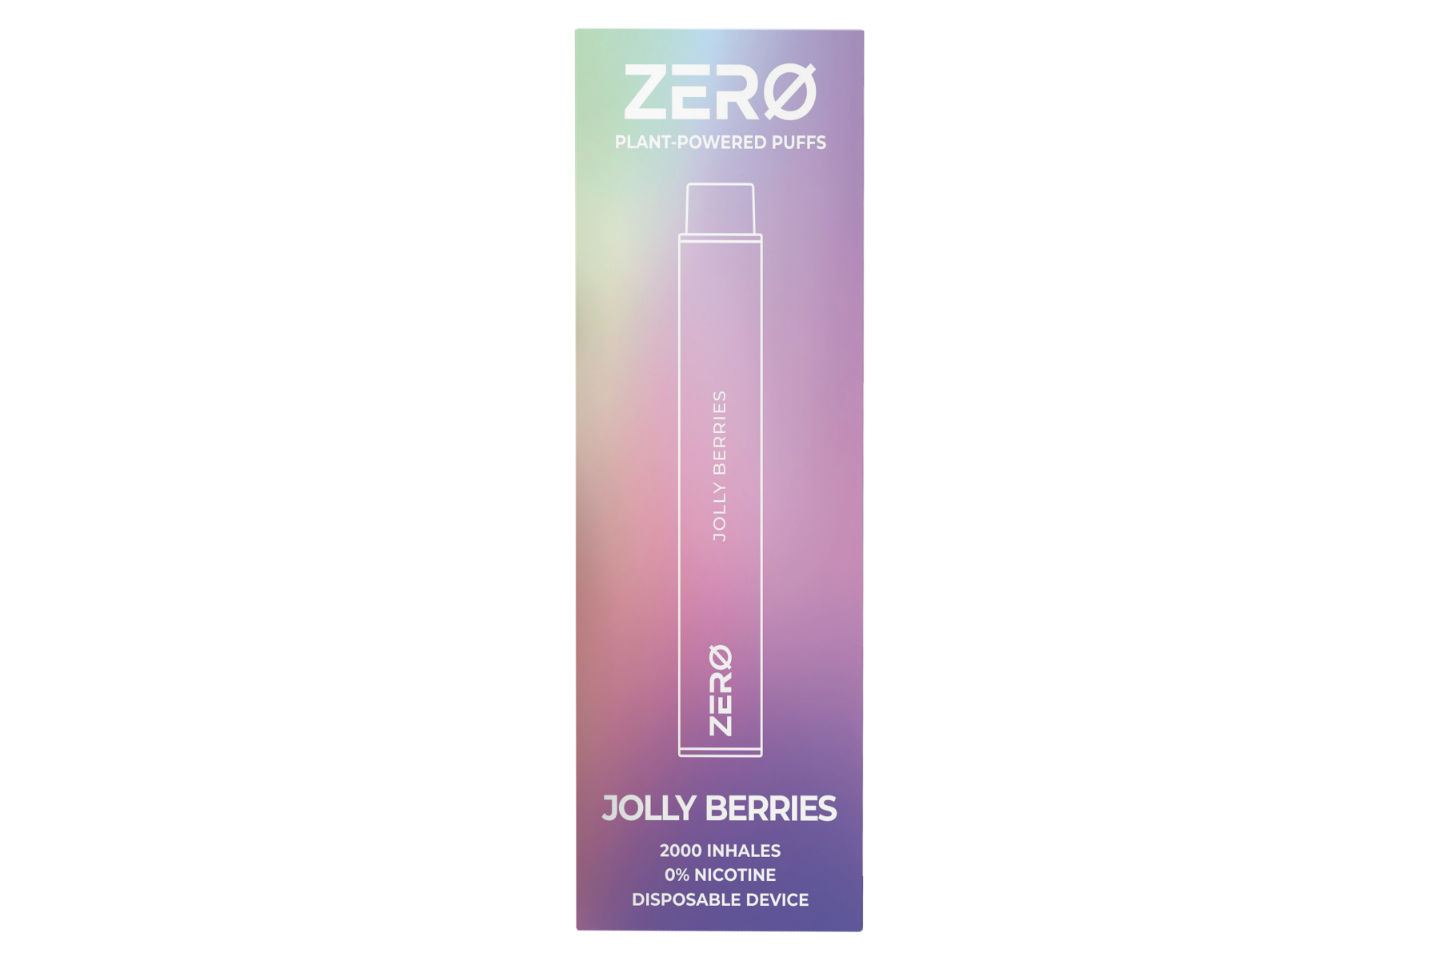 ZERO Air vape in Jolly Berries flavor